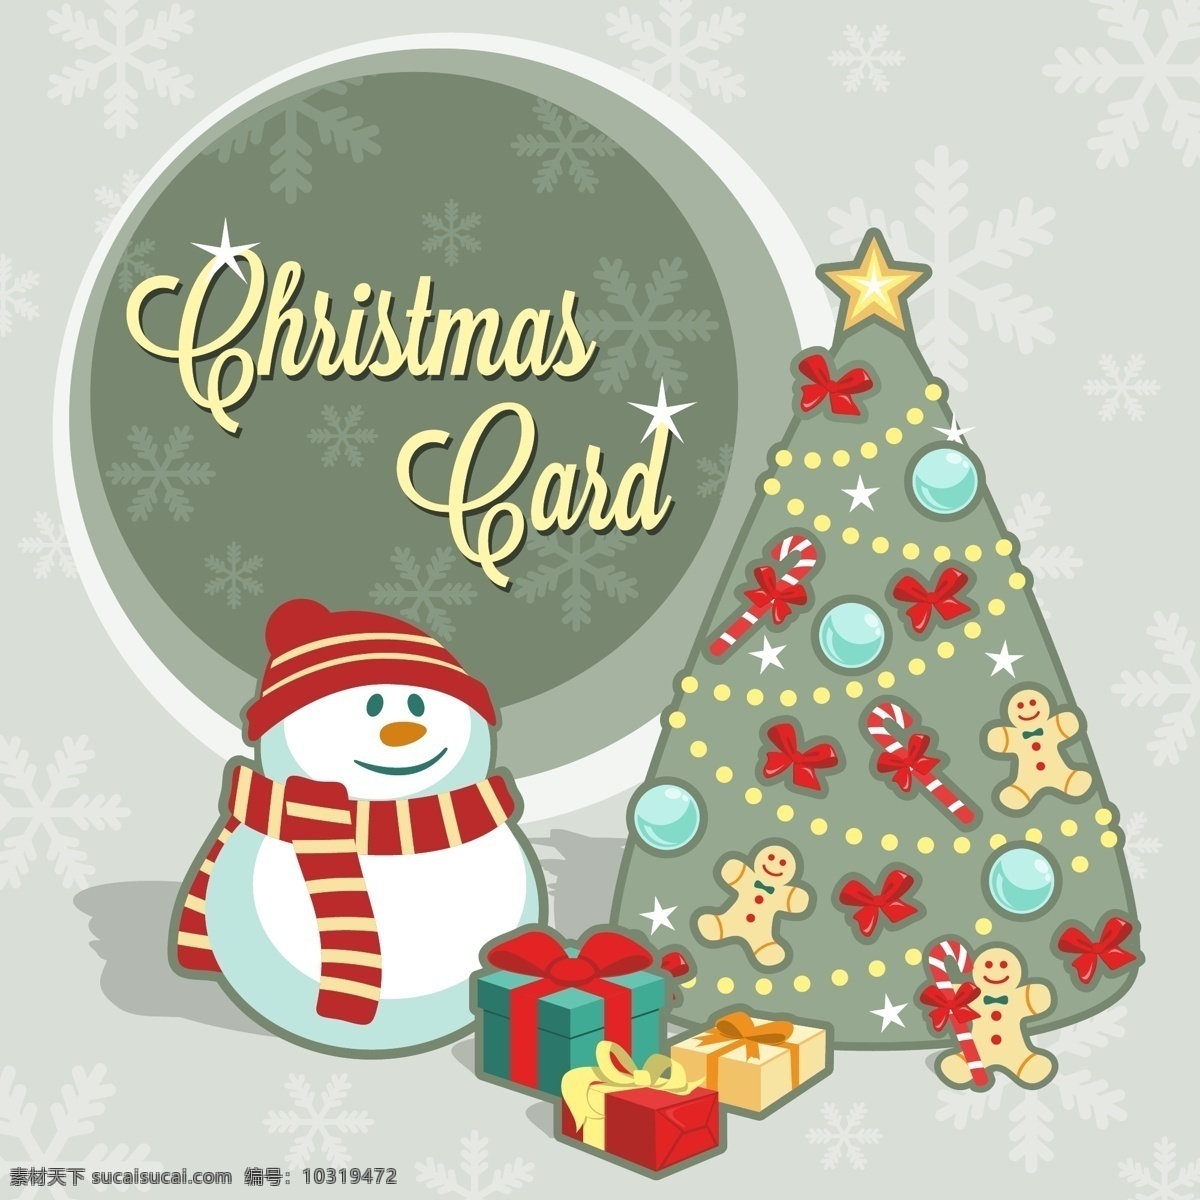 葡萄酒 圣诞树 明星卡 复古 雪 快乐 糖果 圣诞卡 圣诞 礼品卡 玩具 领带 雪人 闪光 装饰 球 明信片 灰色